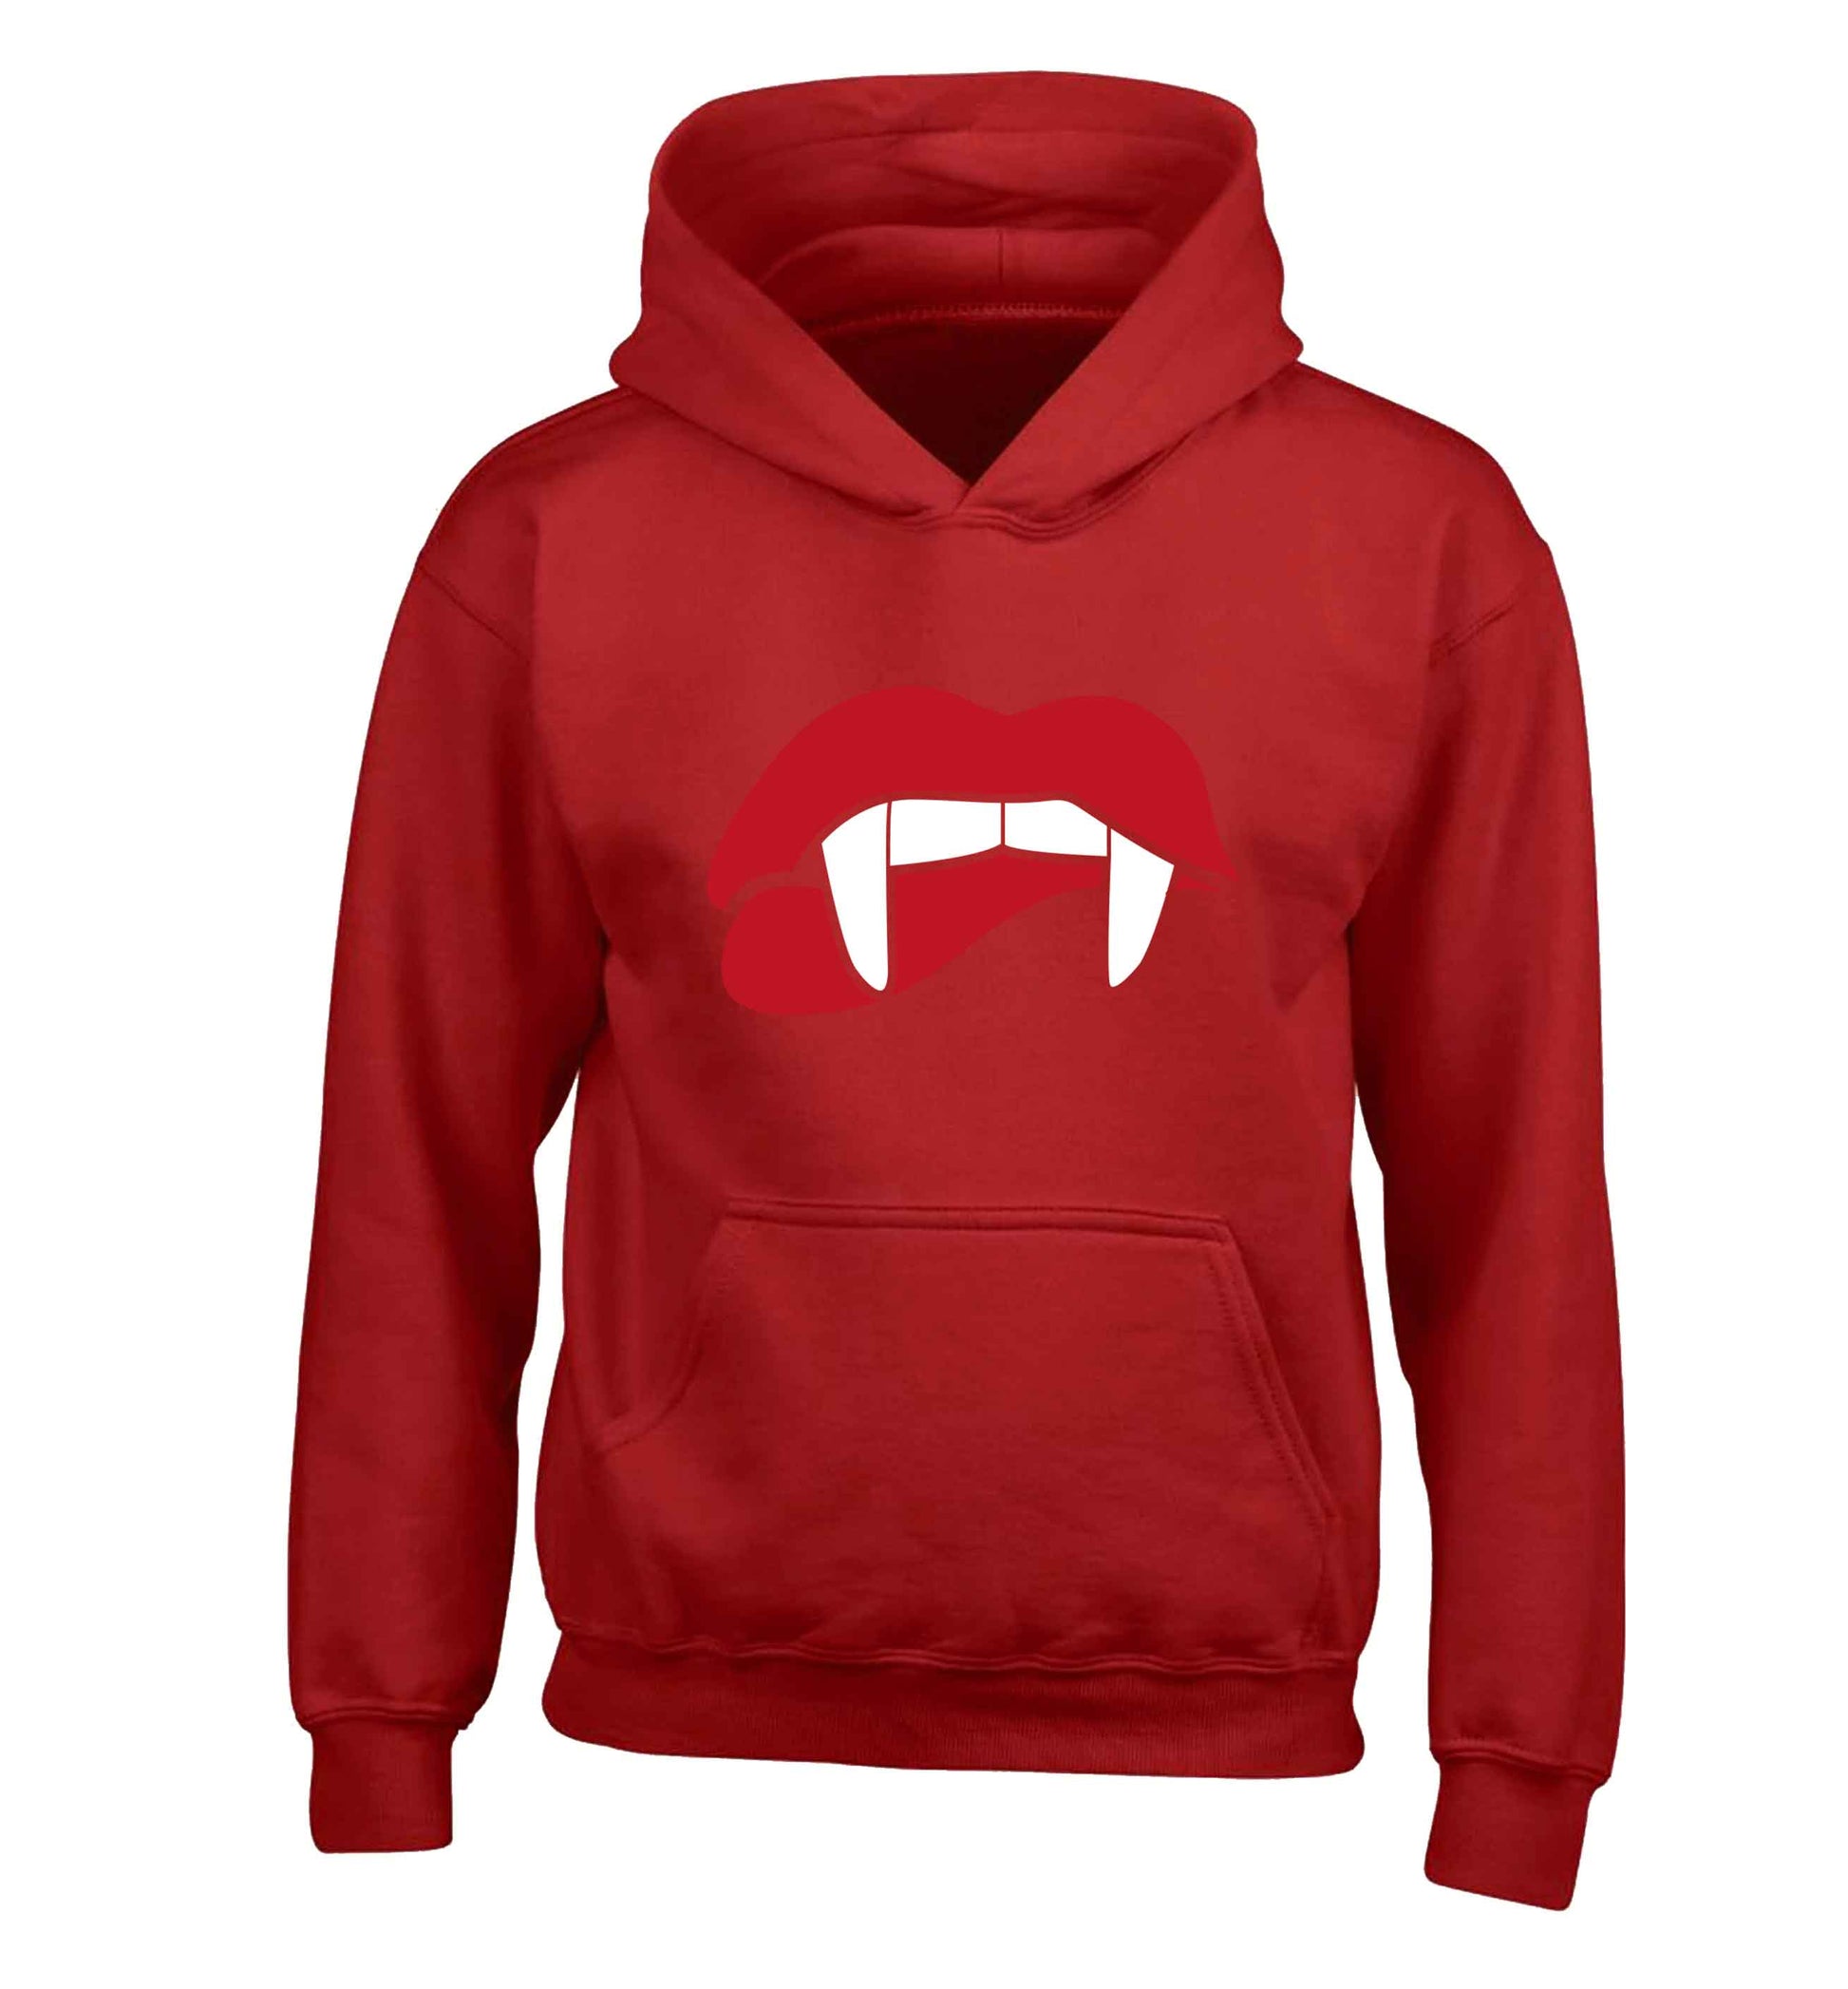 Vampire fangs children's red hoodie 12-13 Years